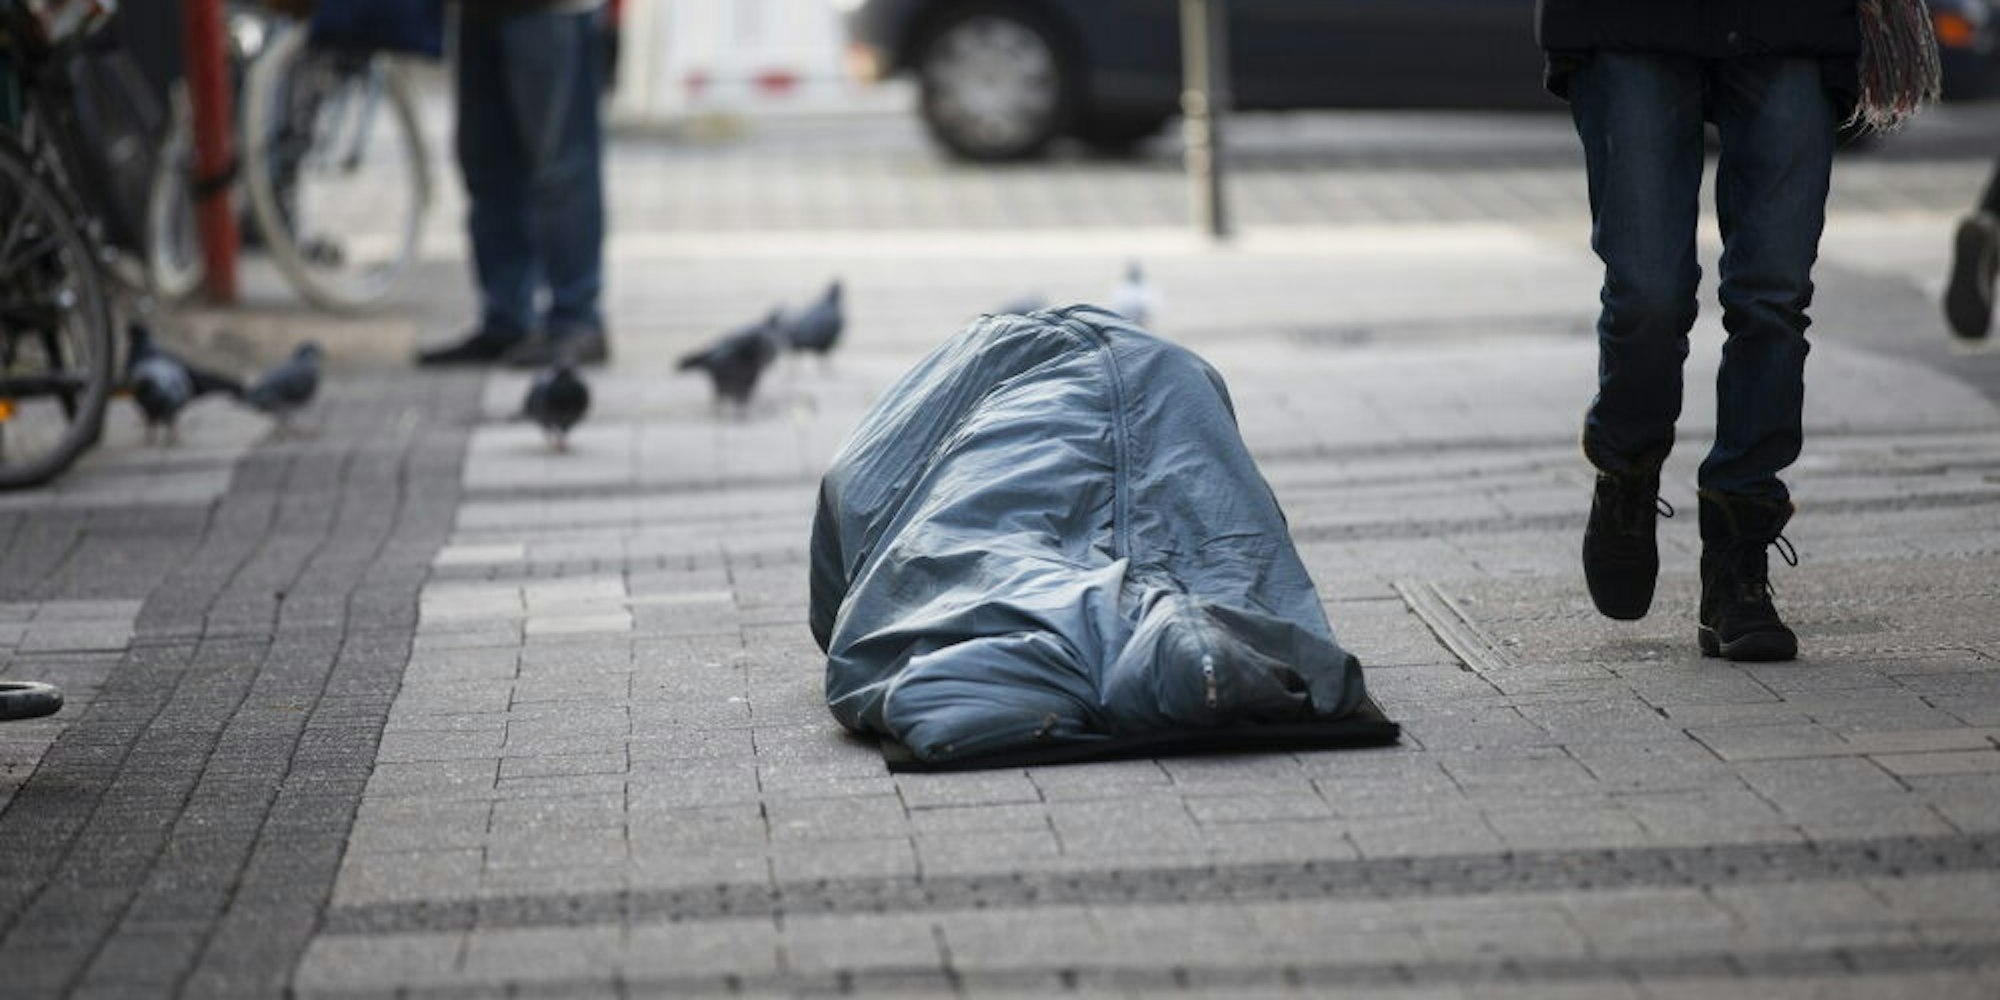 Hilfe bitter nötig: Ein obdachloser Menschen liegt tagsüber in der Fußgängerzone.